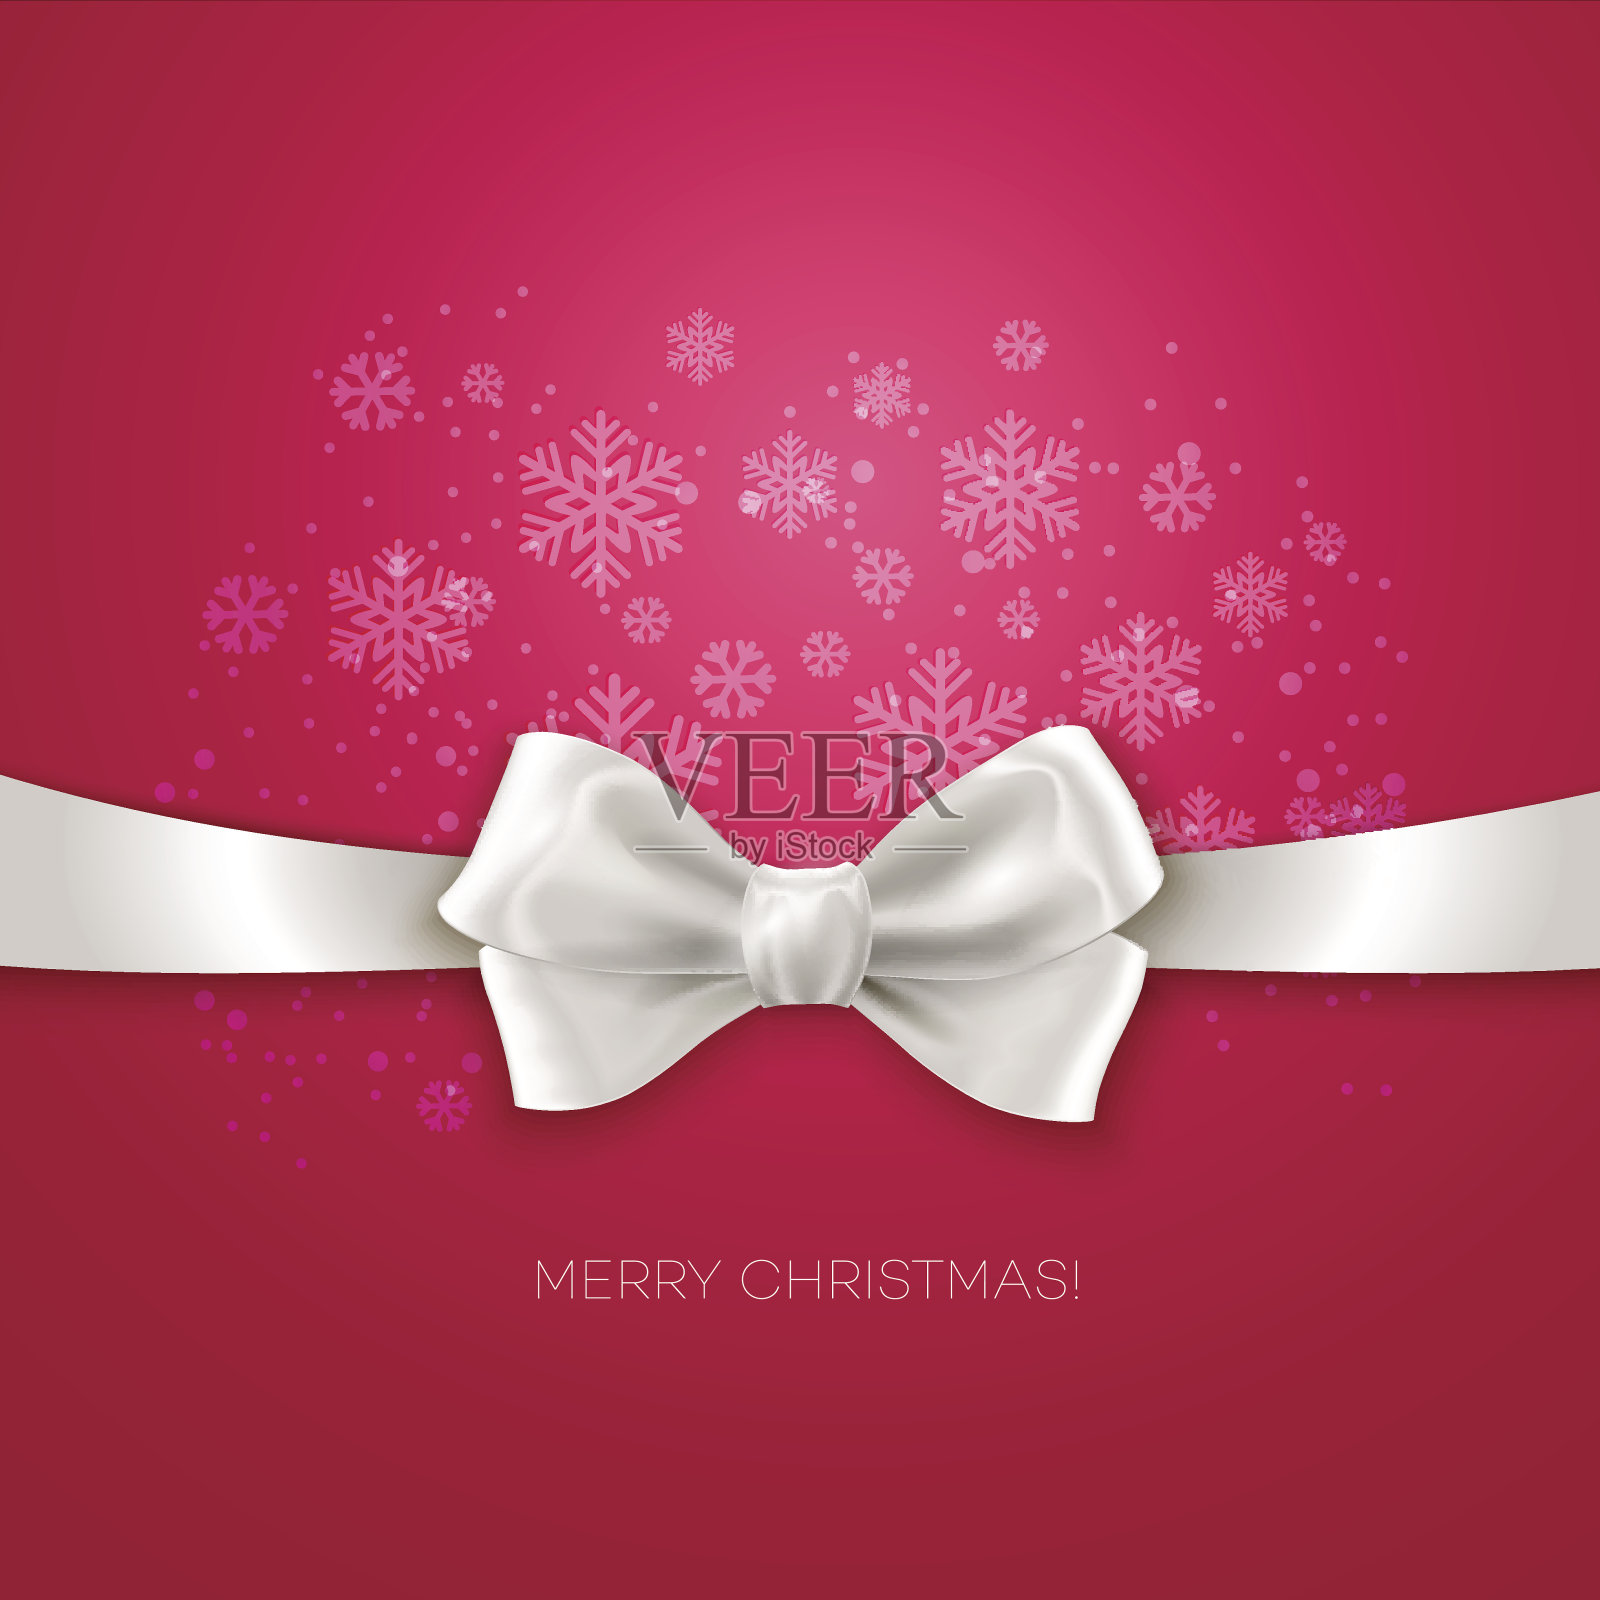 粉色圣诞背景丝带与白色丝绸蝴蝶结插画图片素材